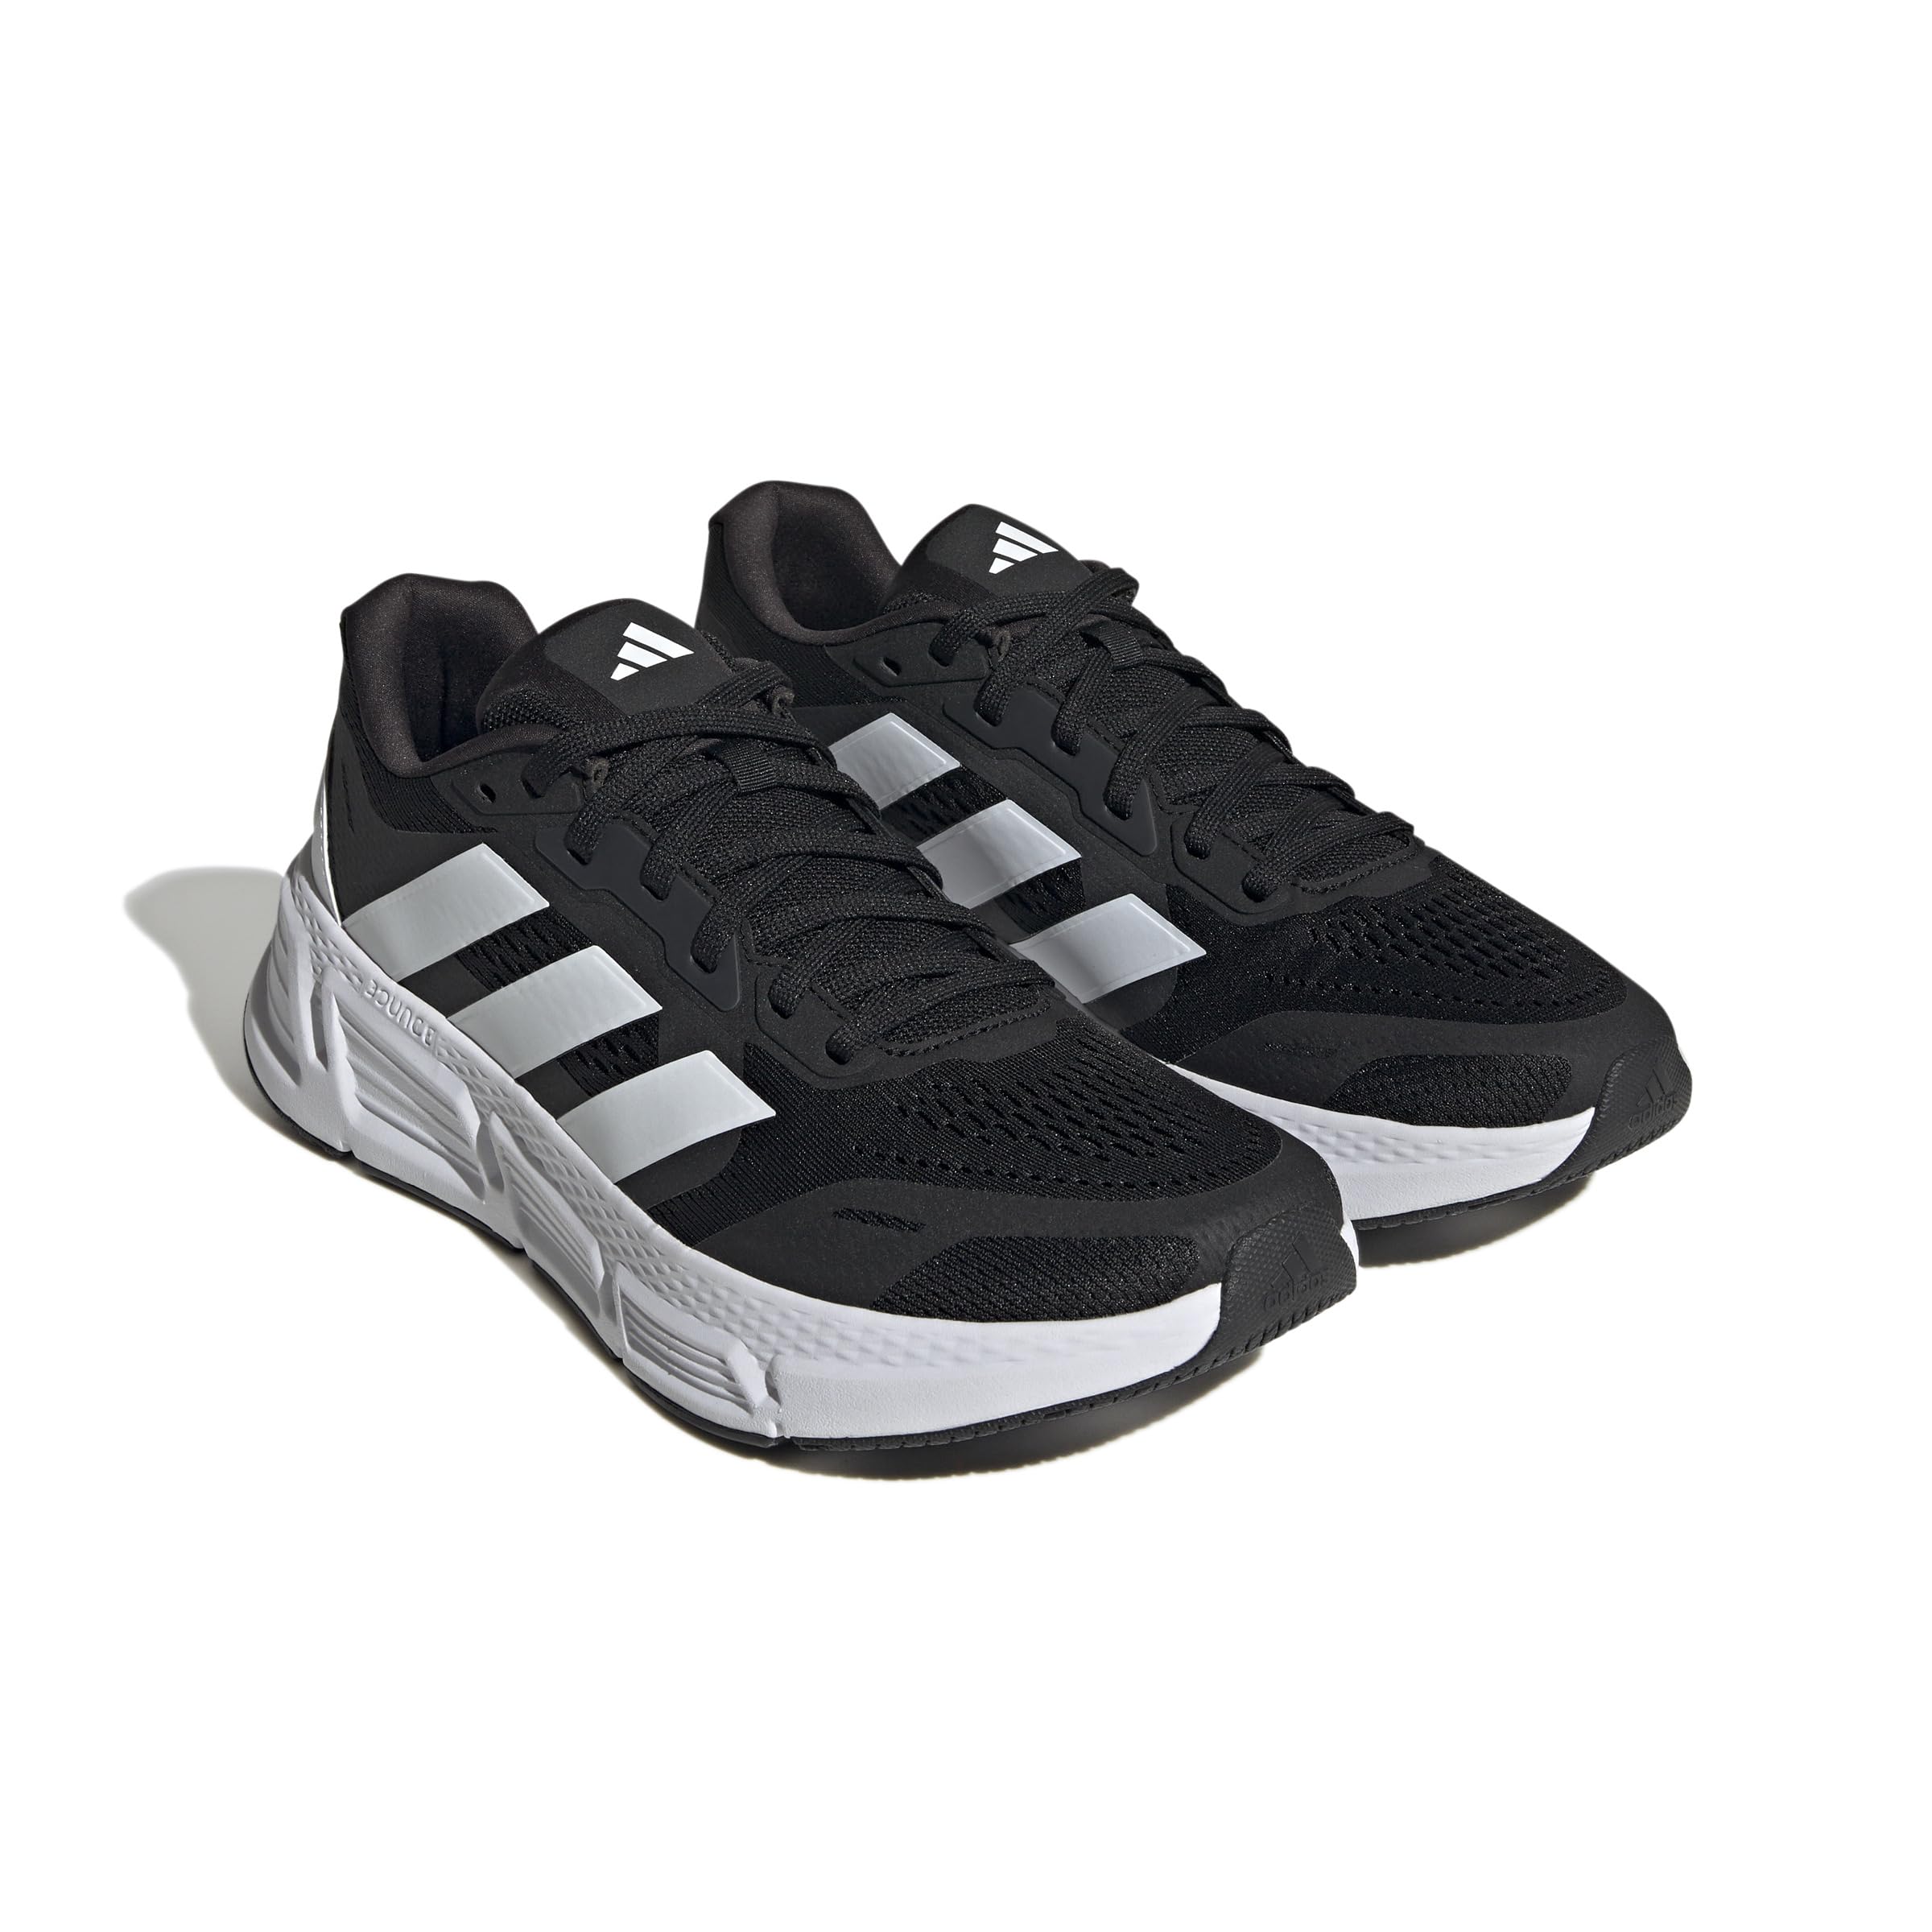 Беговые кроссовки Questar 2 от Adidas для мужчин Adidas